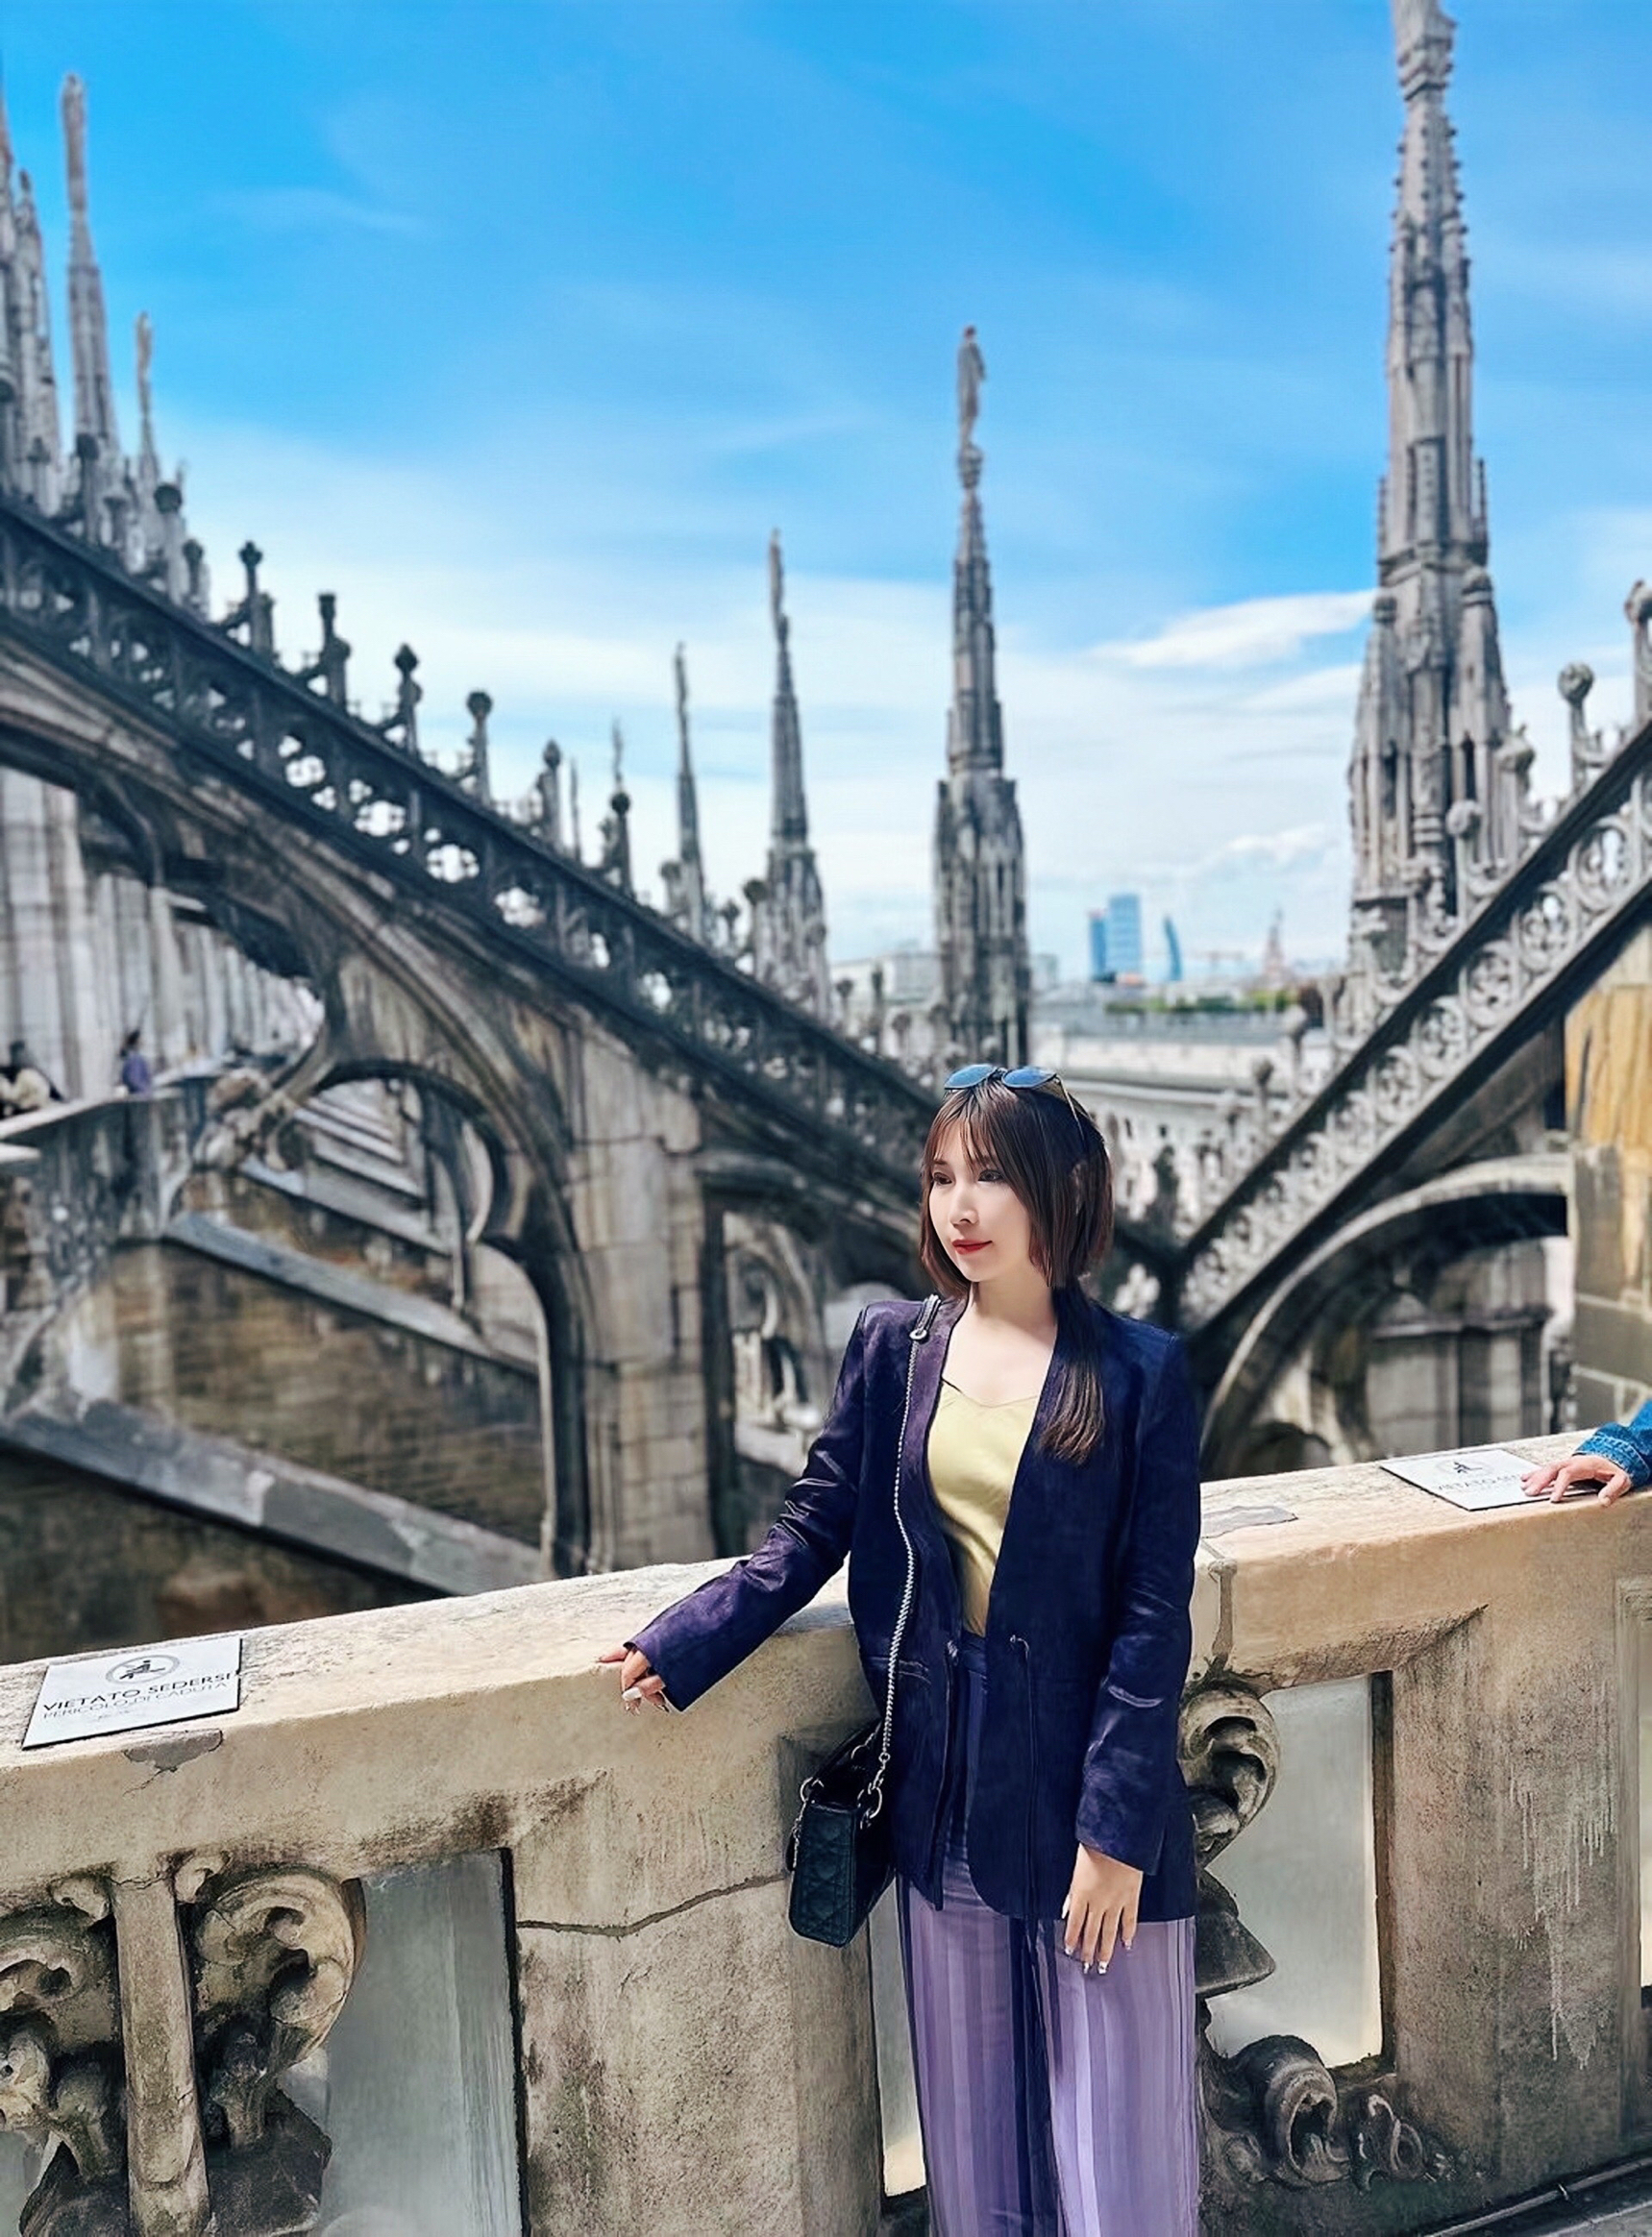 惟有青山似洛中 | Duomo di Milano